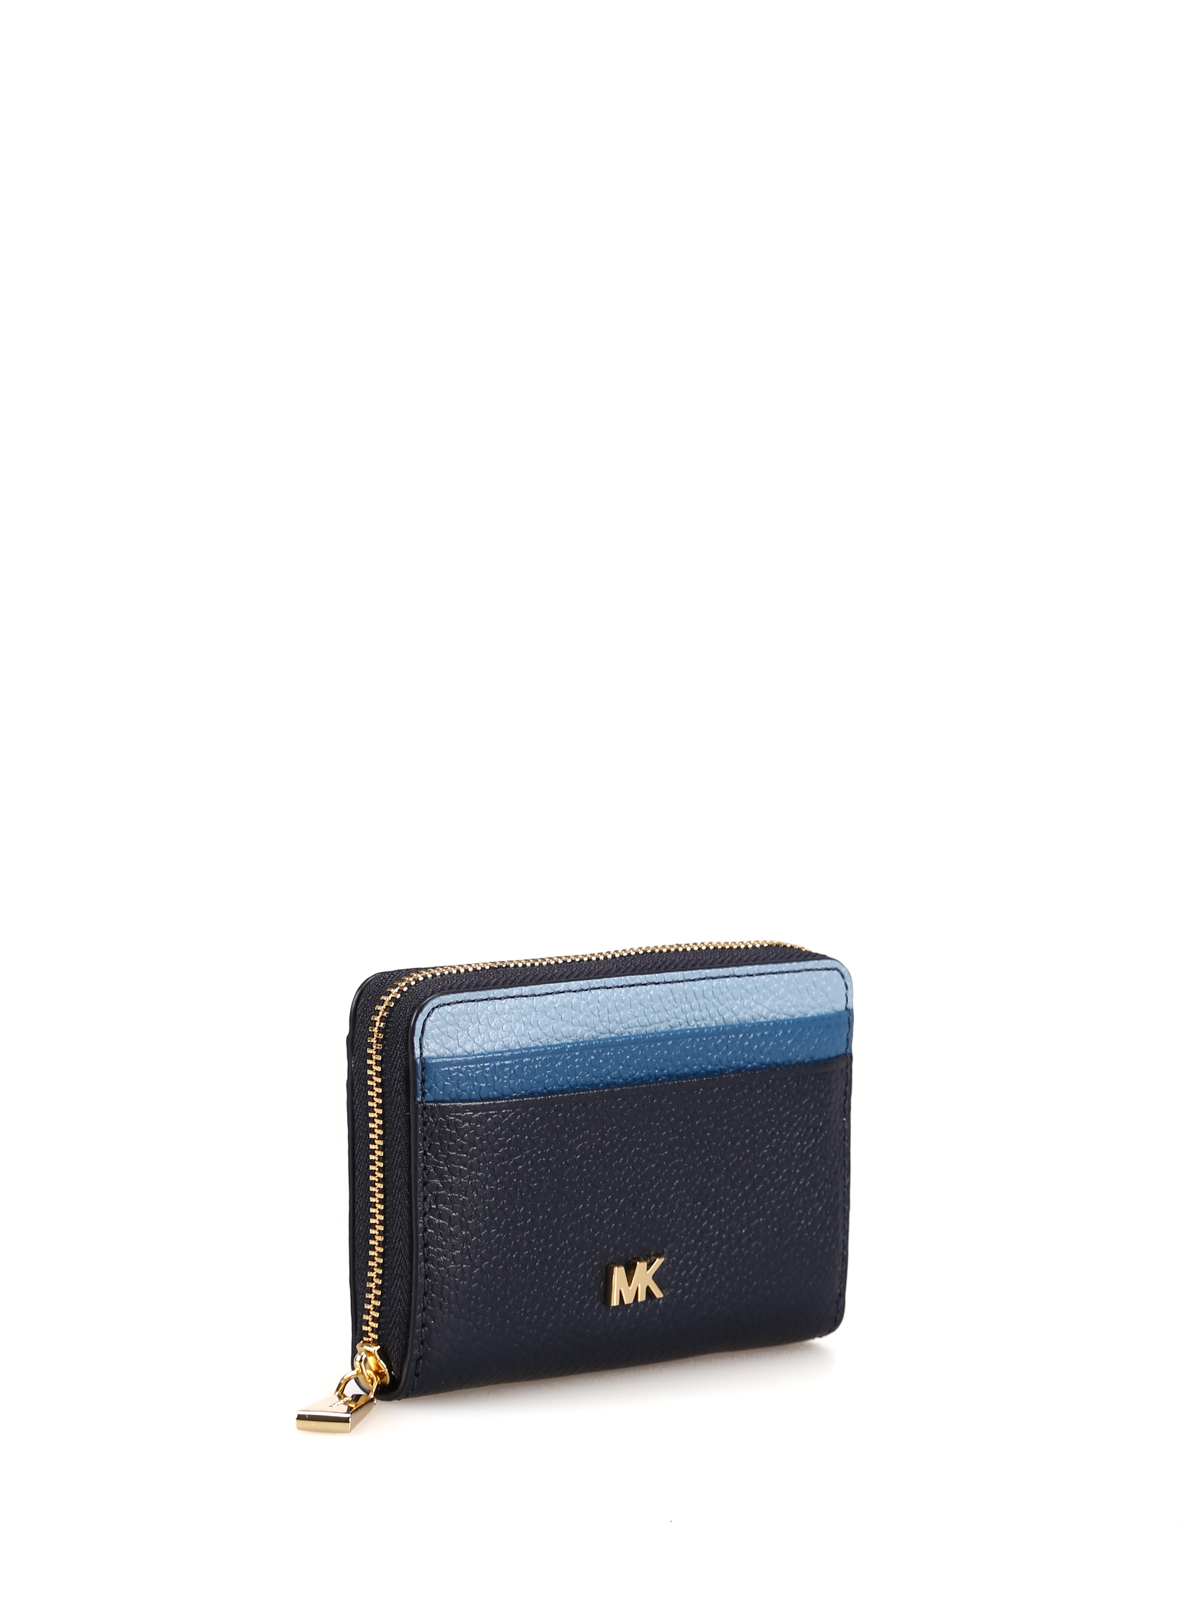 Wallets & purses Michael Kors - Money Pieces blue tone zipped wallet -  32F8GF6Z1T443